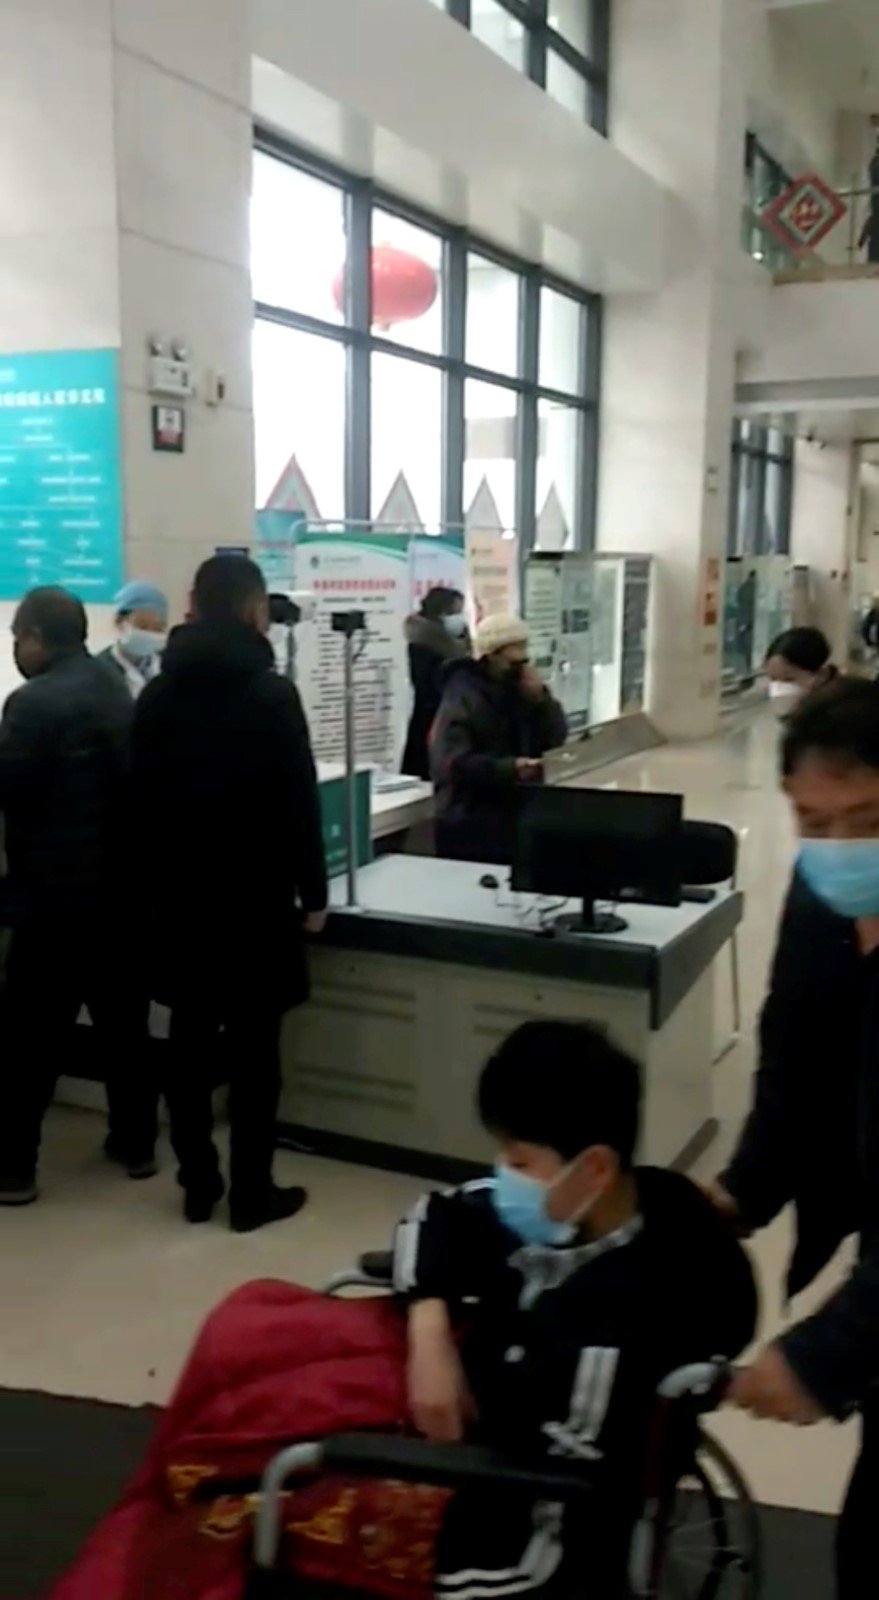 Čínu děsí nový typ koronaviru. Obyvatelé nosí roušky